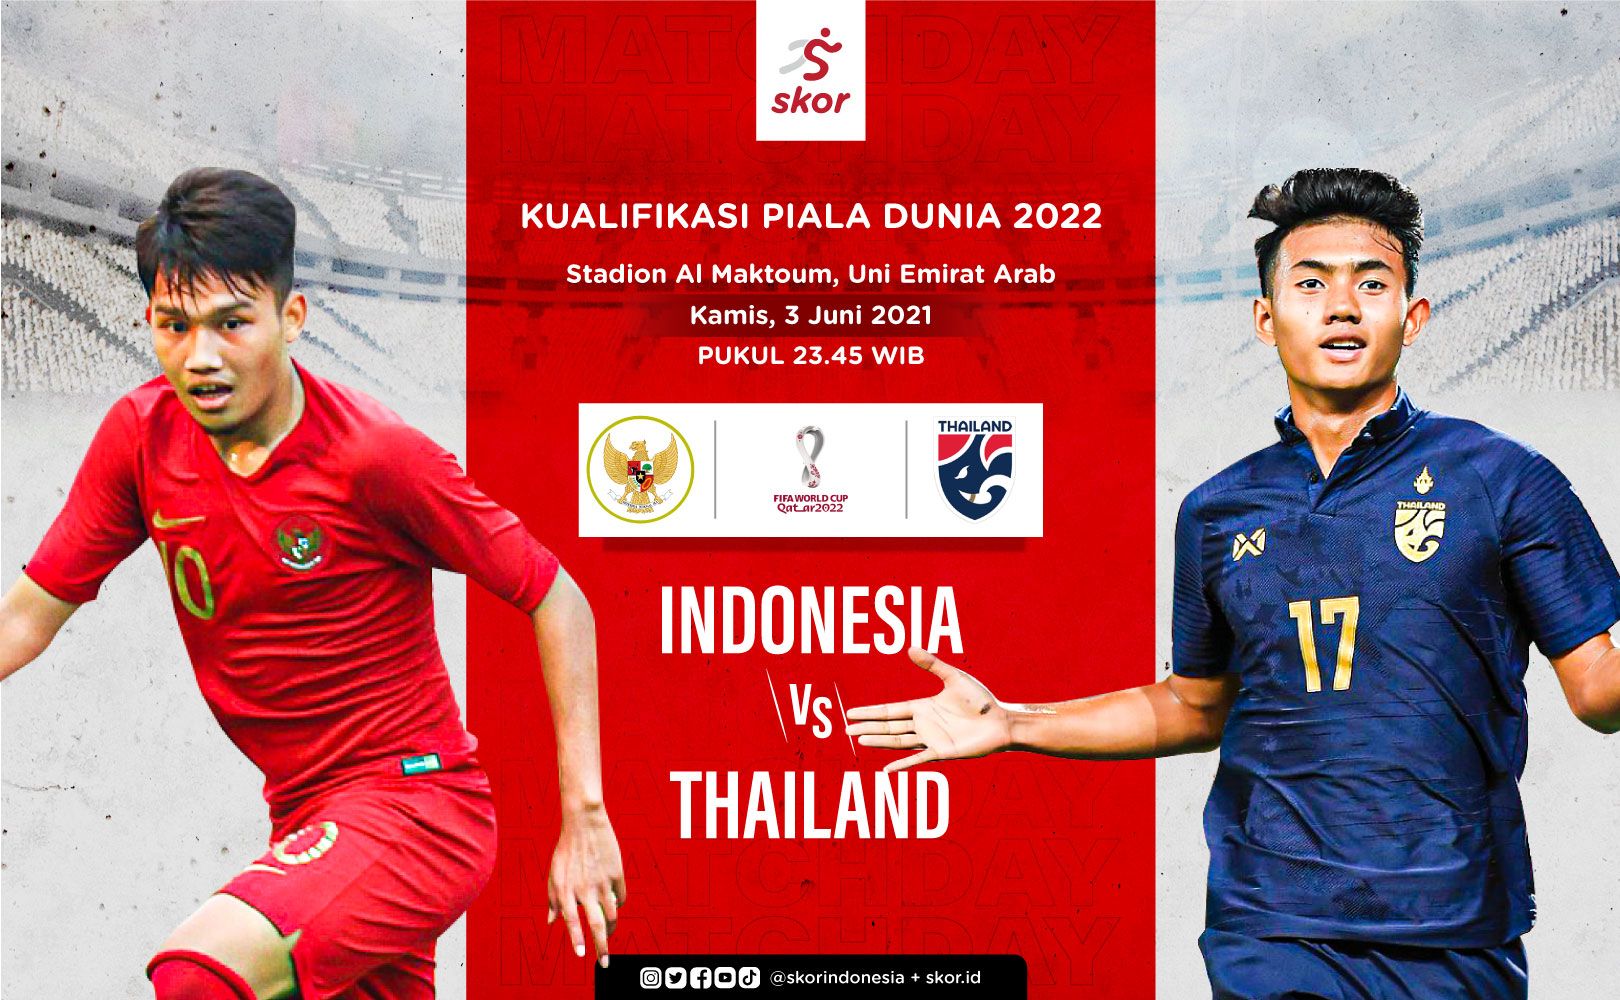 Indonesia uni skor arab vs emirat Indonesia vs